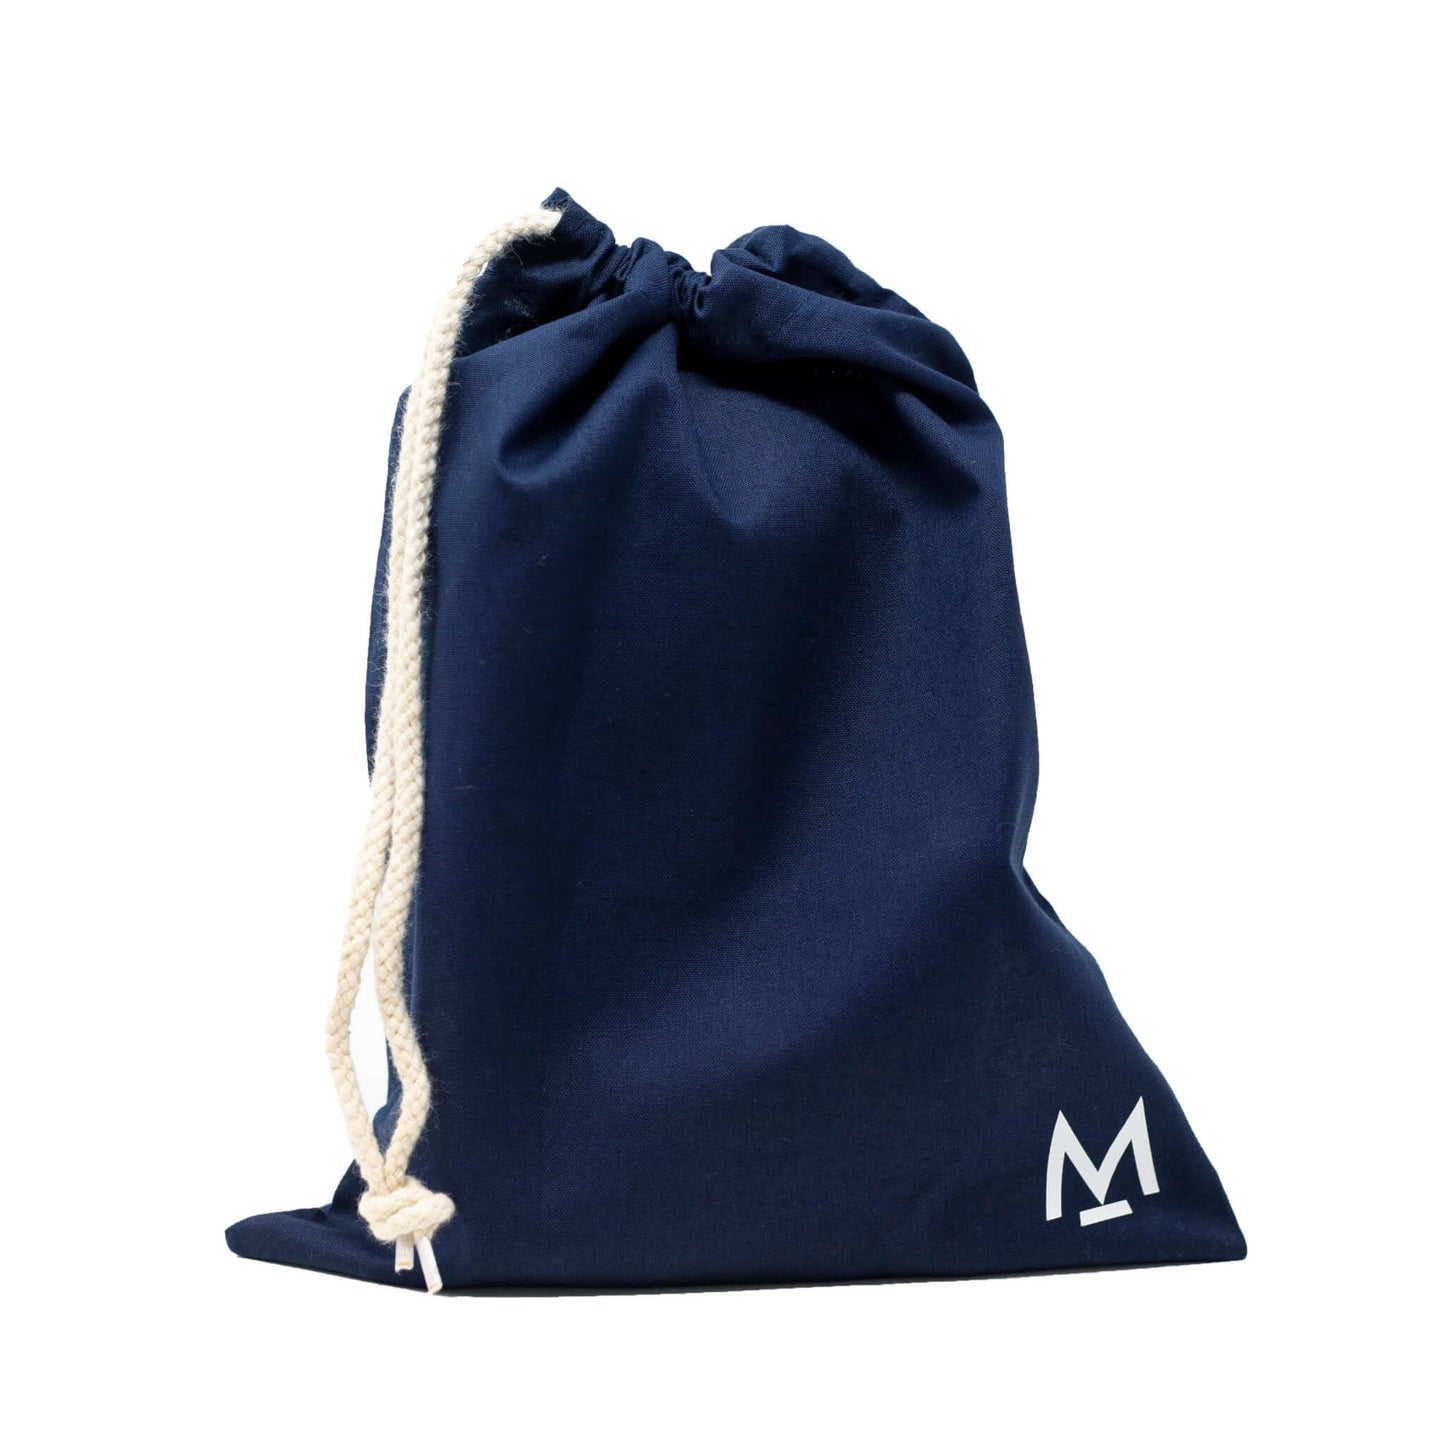 Keepcup Gift Bag